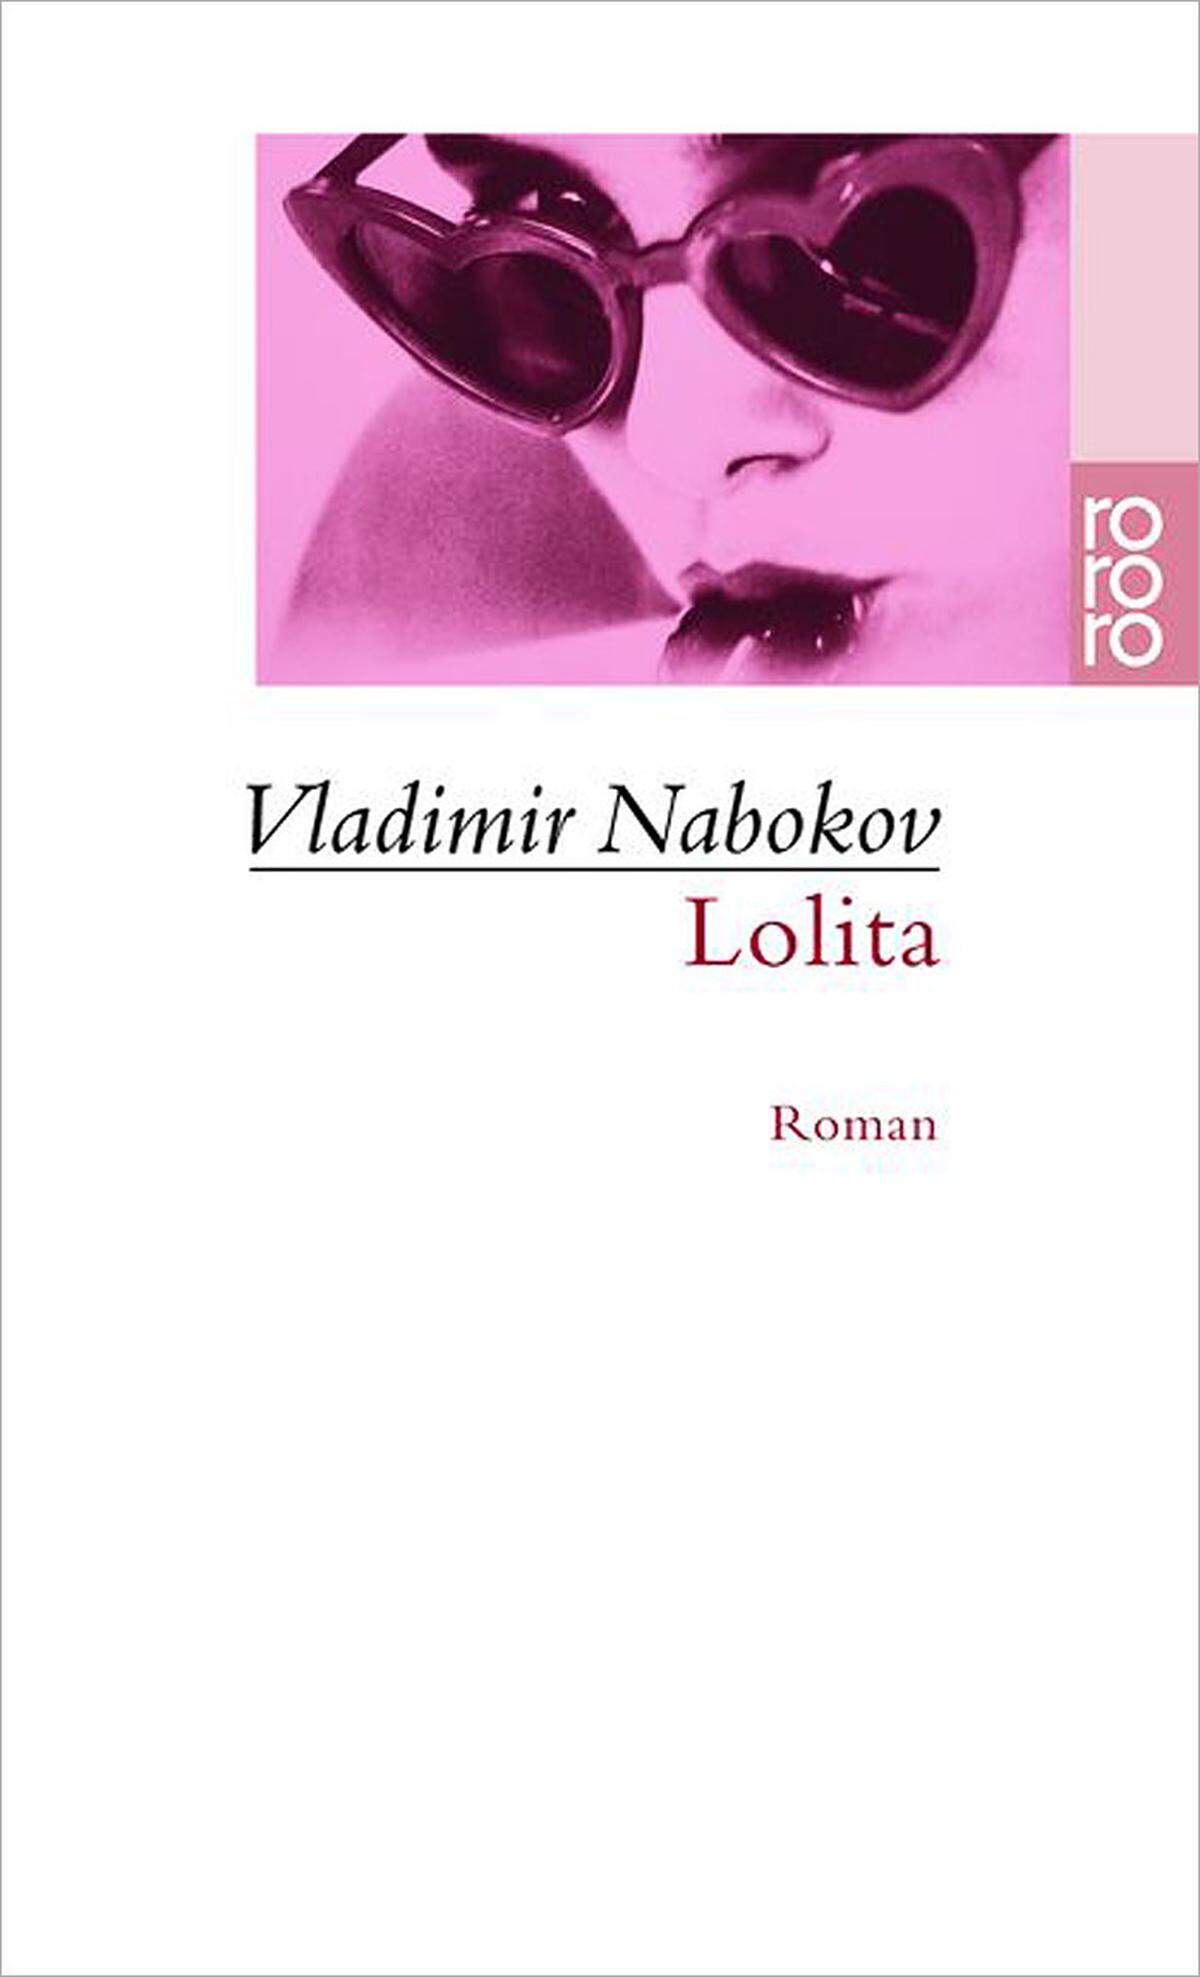 "Lolita, Licht meines Lebens, Feuer meiner Lenden. Meine Sünde, meine Seele. Lo-li-ta: die Zungenspitze macht drei Sprünge den Gaumen hinab und tippt bei Drei gegen die Zähne. Lo. Li. Ta." Vladimir Nabokov: "Lolita", 1955